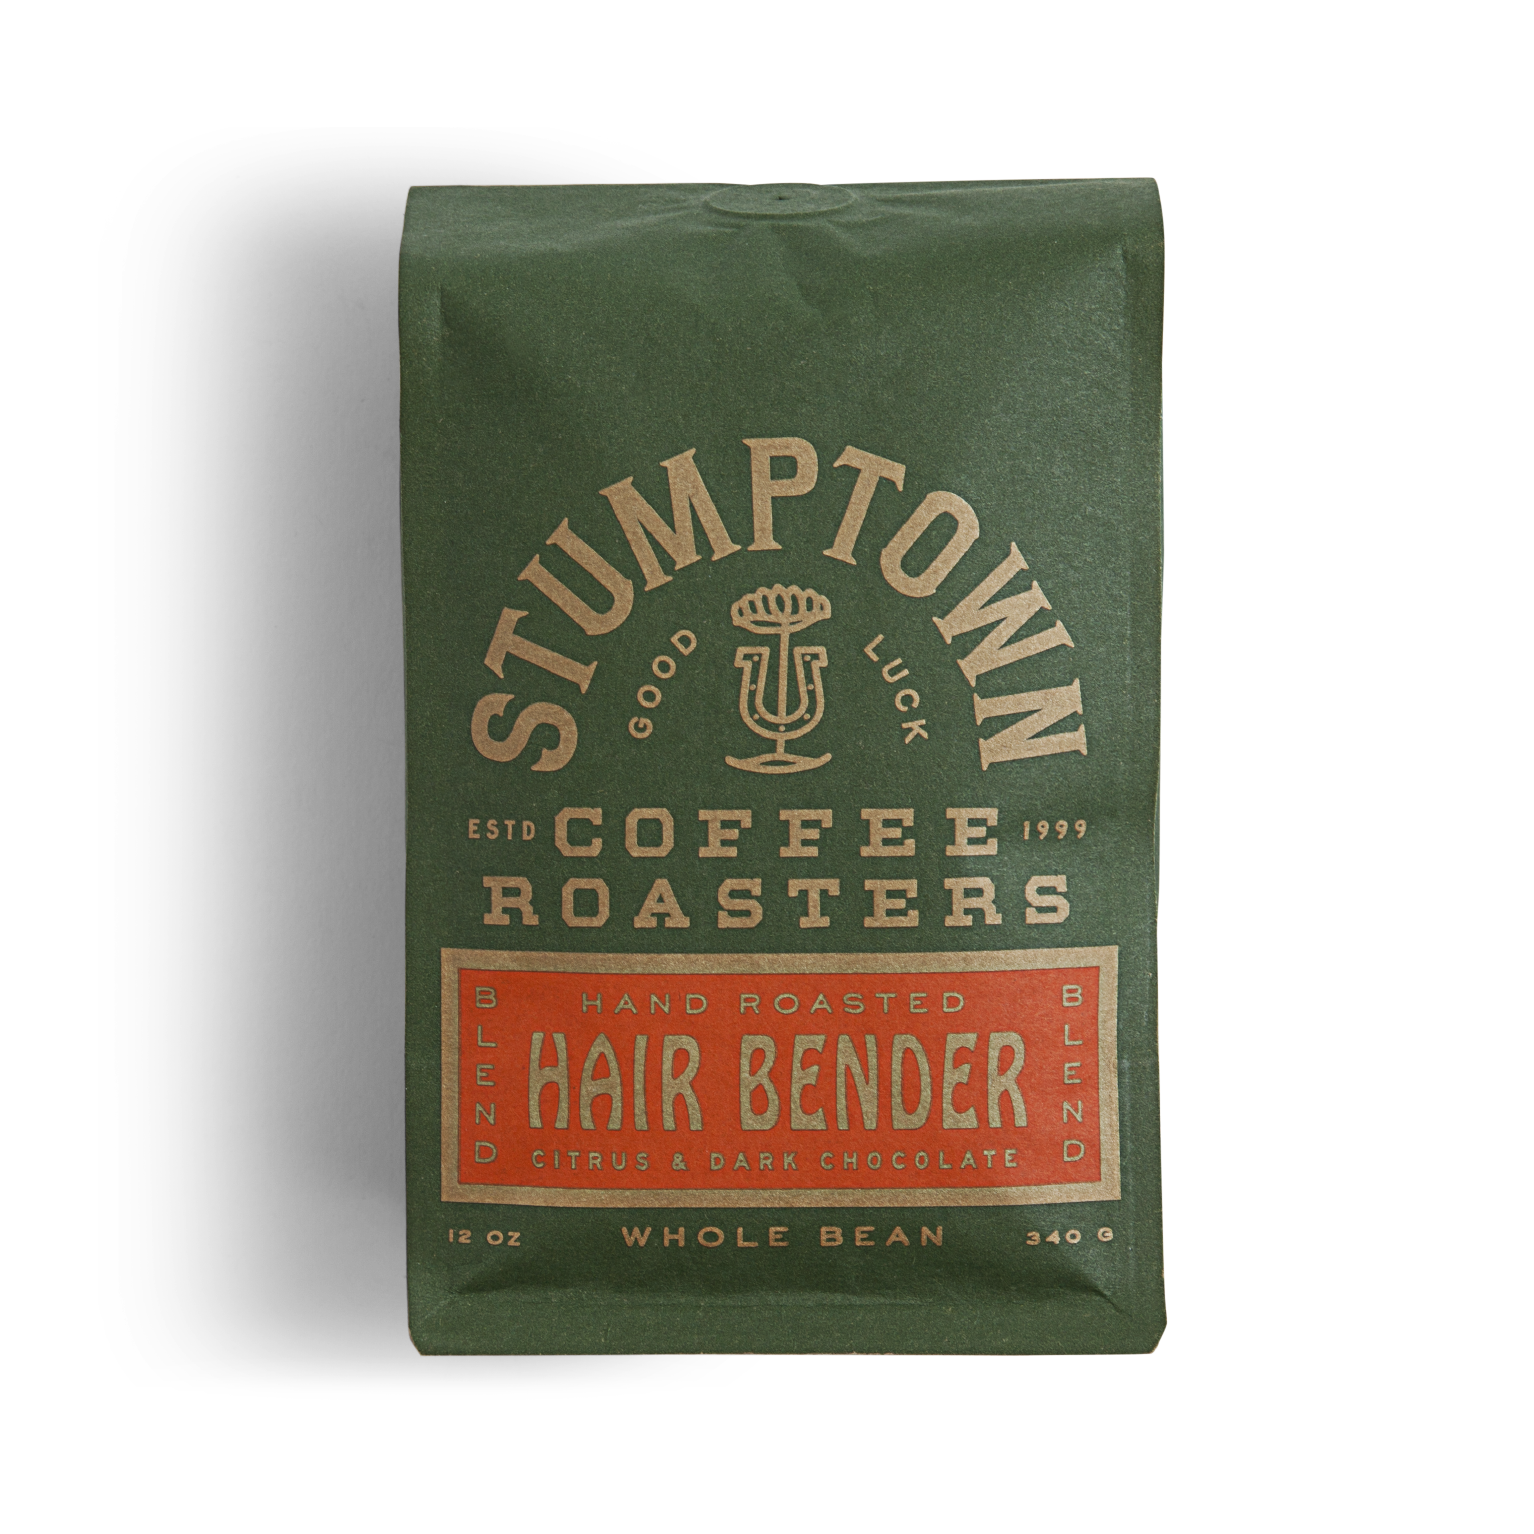 Stumptown Hair Bender